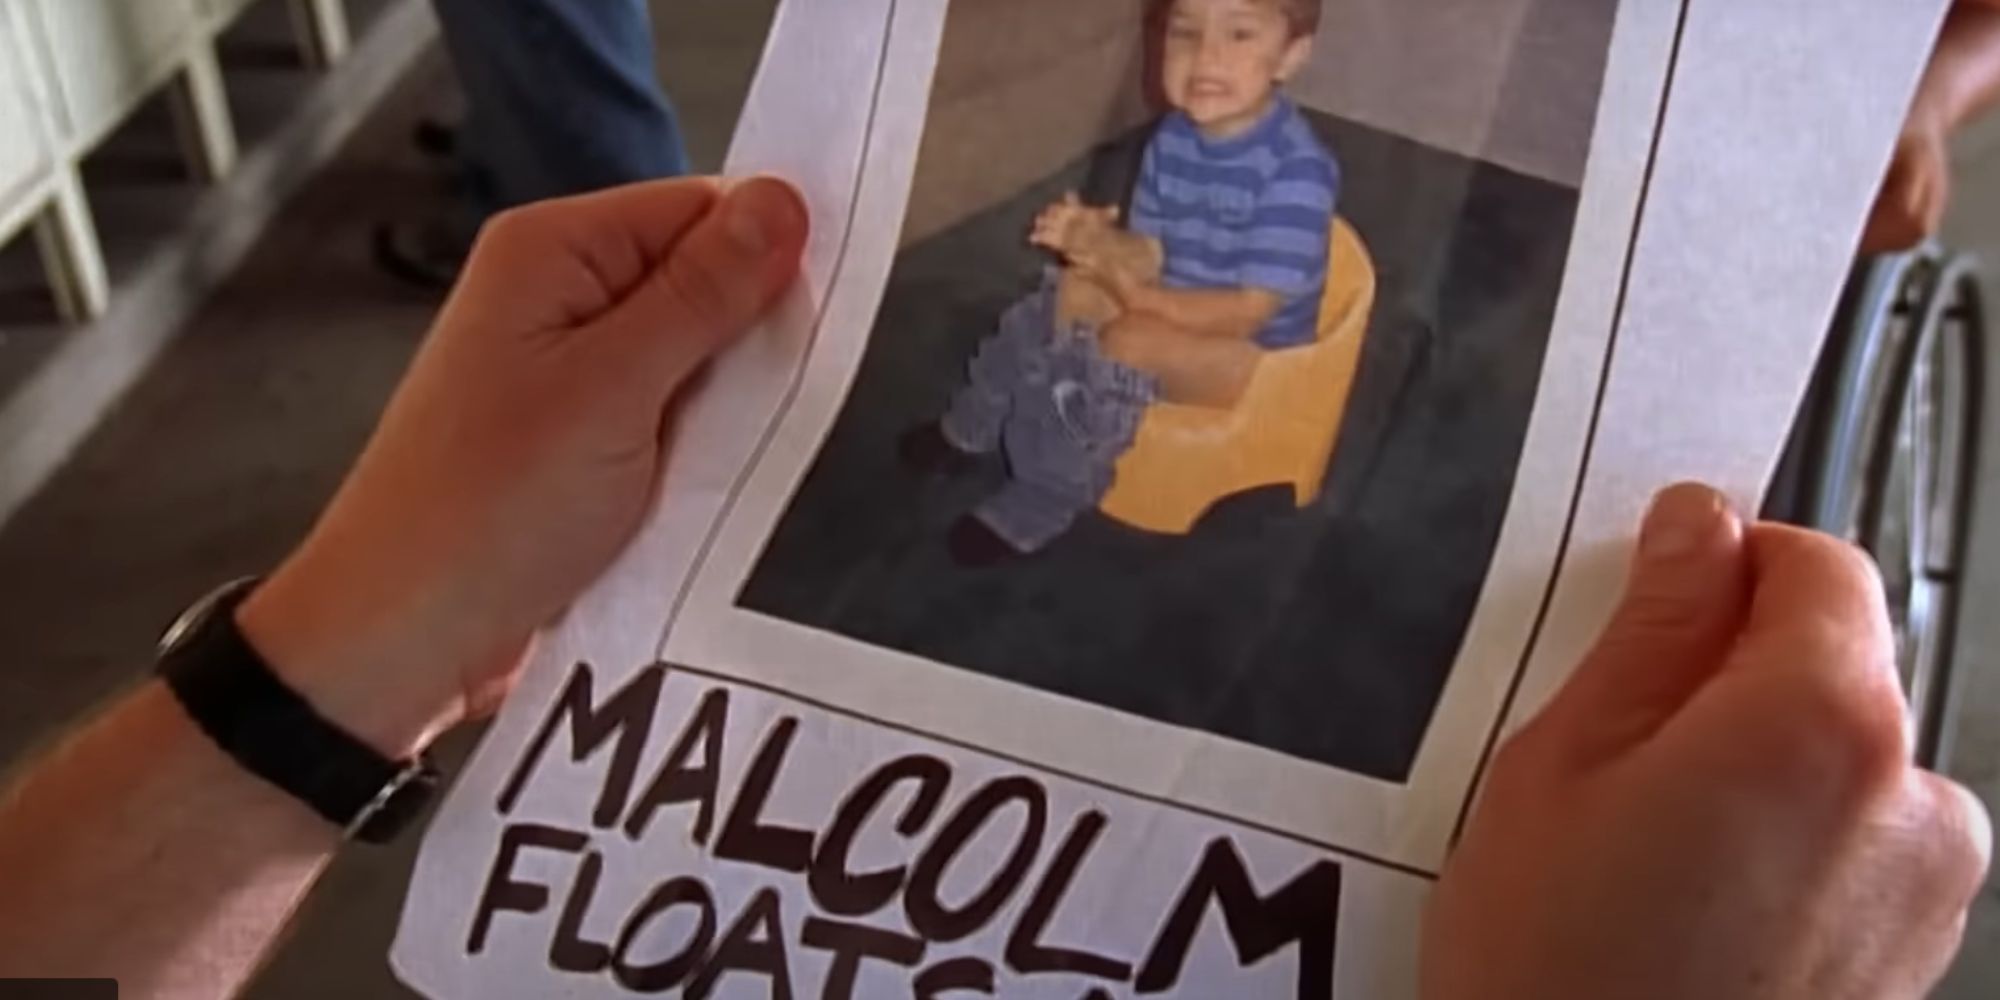 Malcolm segura um livro com uma foto dele quando criança, sentado no banheiro de treinamento, com as palavras 'Malcolm flutua uma ovelha' escritas embaixo dele